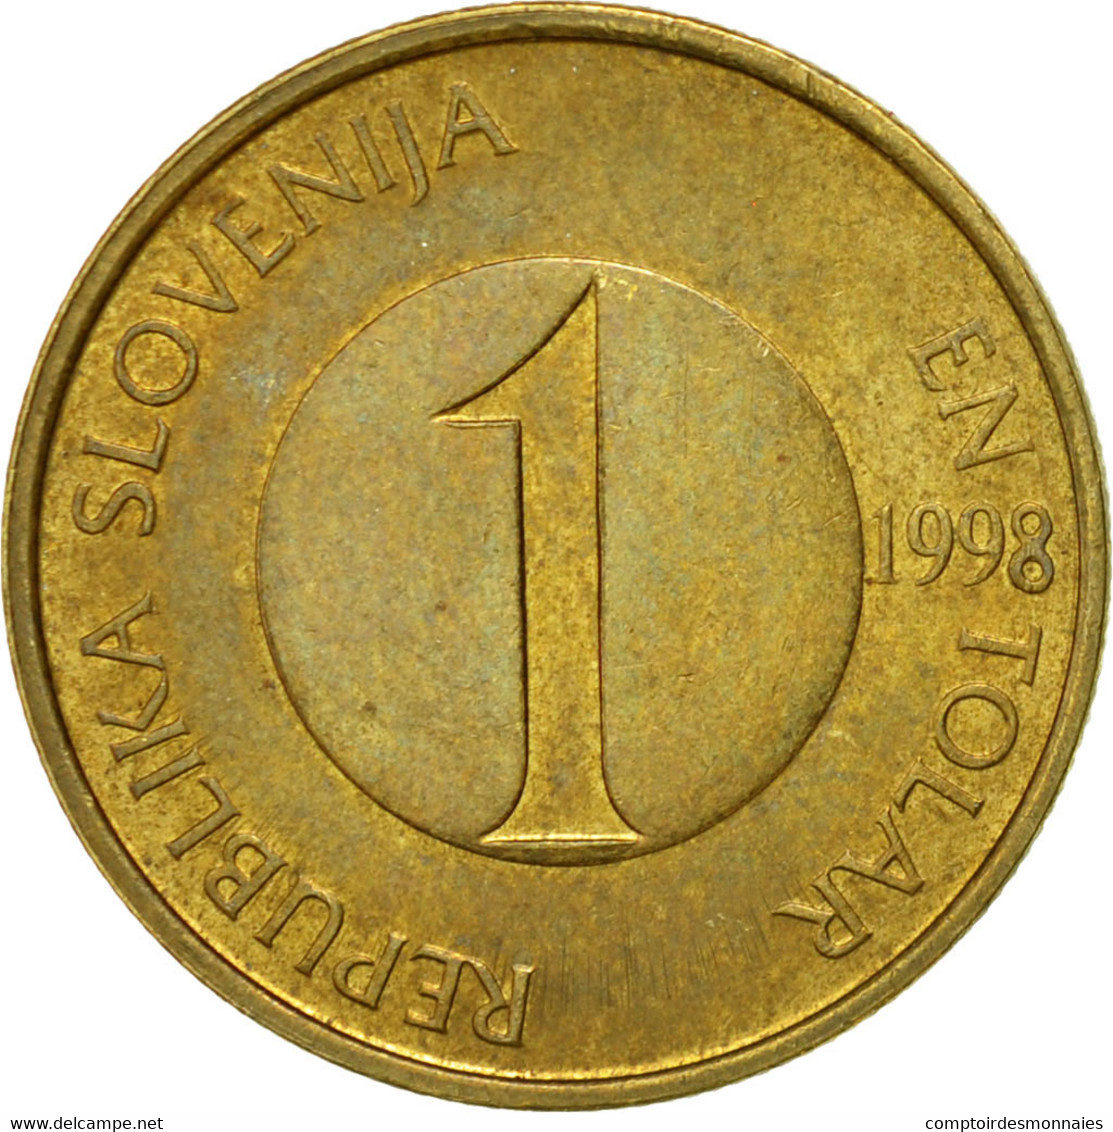 Monnaie, Slovénie, Tolar, 1998, TTB, Nickel-brass, KM:4 - Slovénie